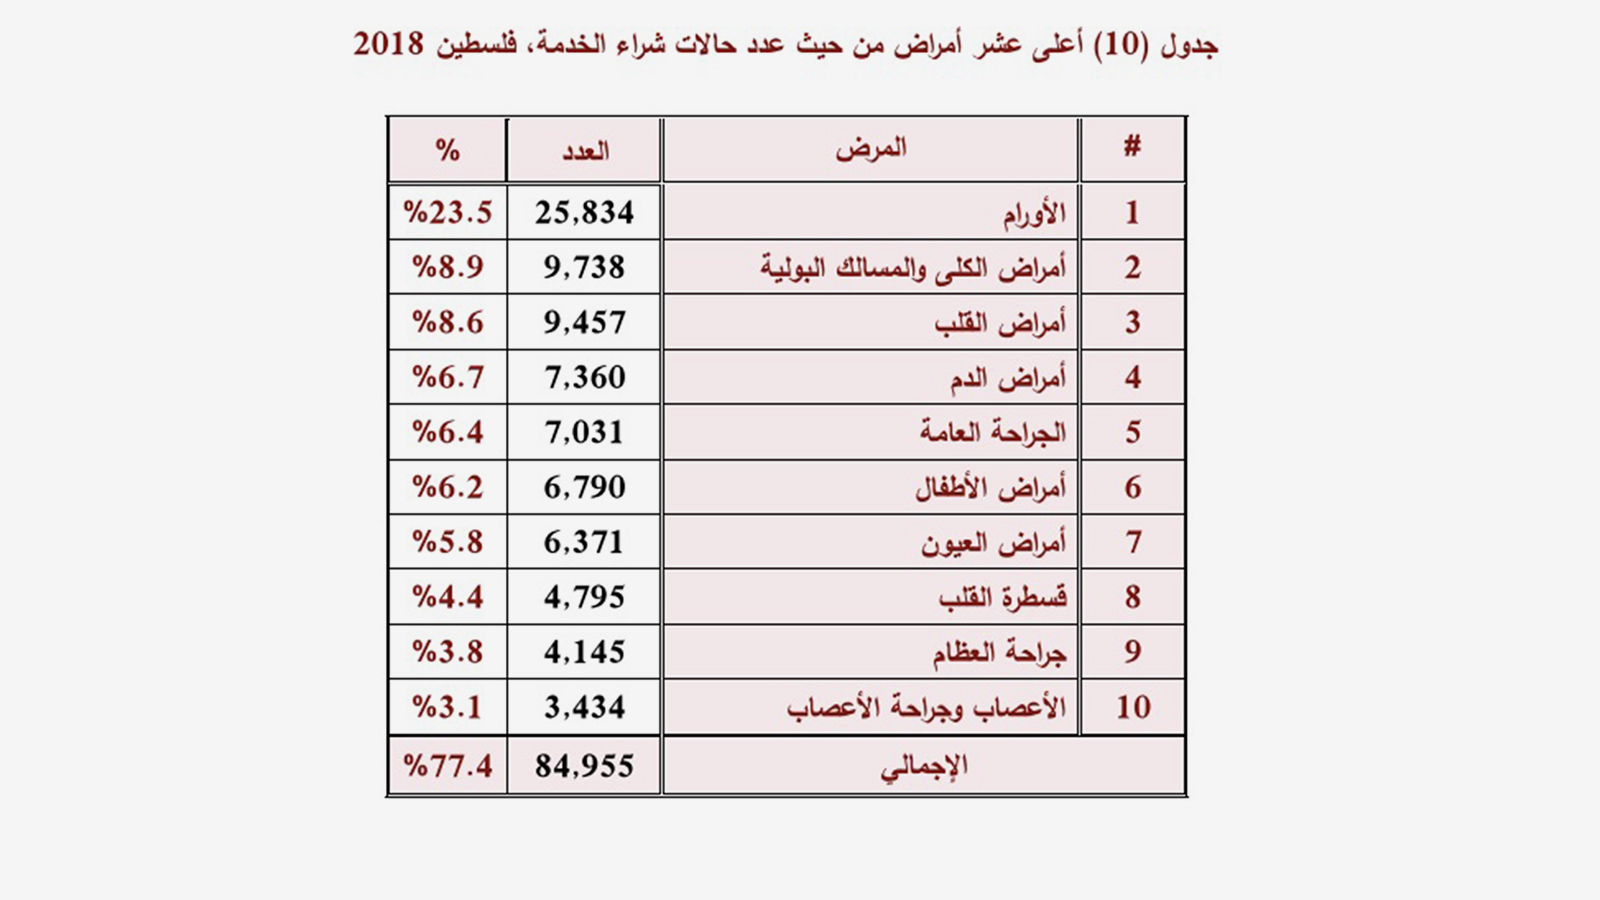 ‪أعلى عشرة أمراض من حيث شراء الخدمة في وزارة الصحة الفلسطينية‬ (التقرير الصحي السنوي- فلسطين 2018- وزارة الصحة)